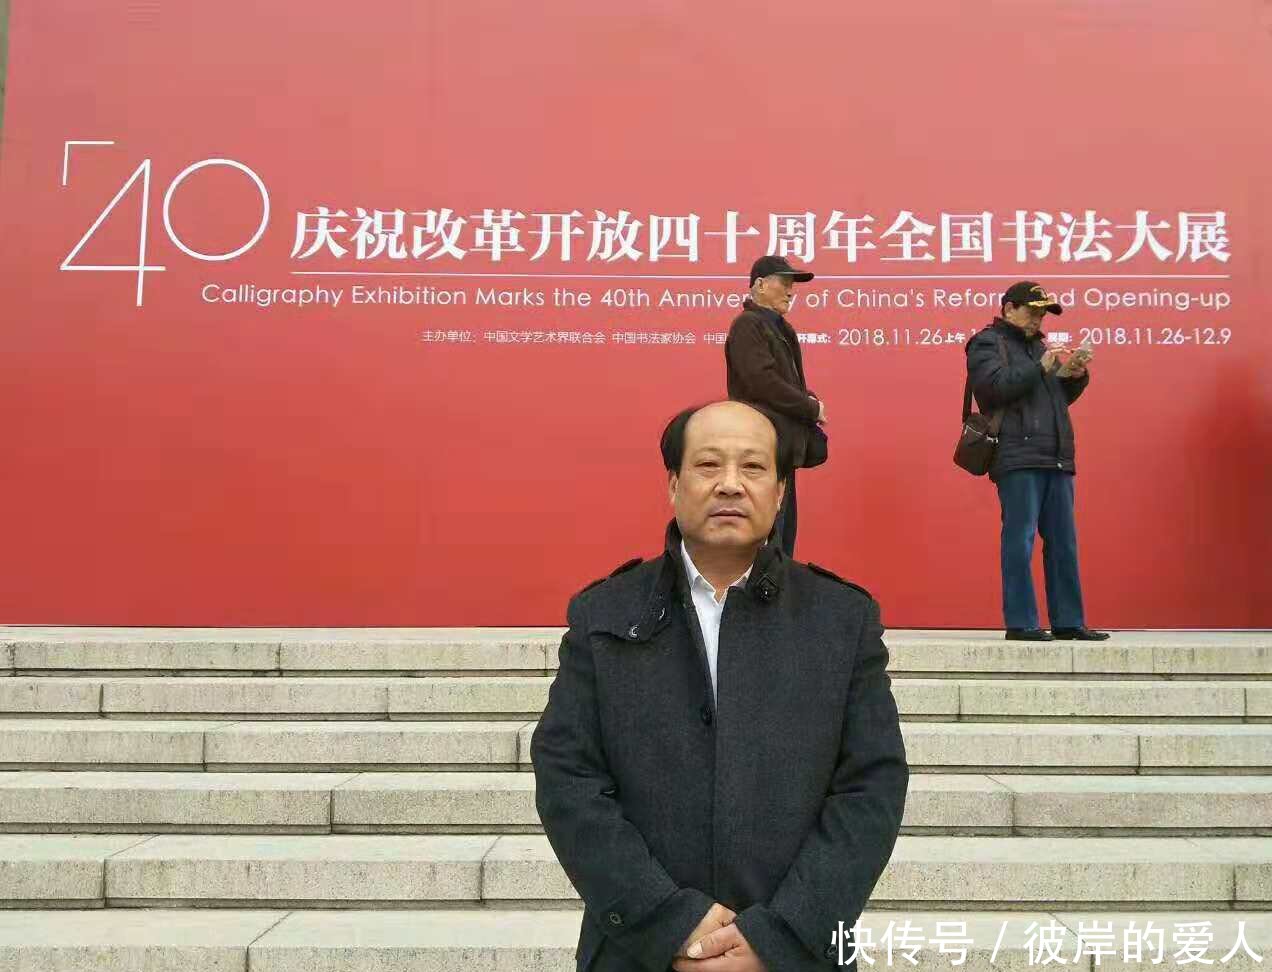 阮成森老师参加庆祝改革开放四十周年全国书